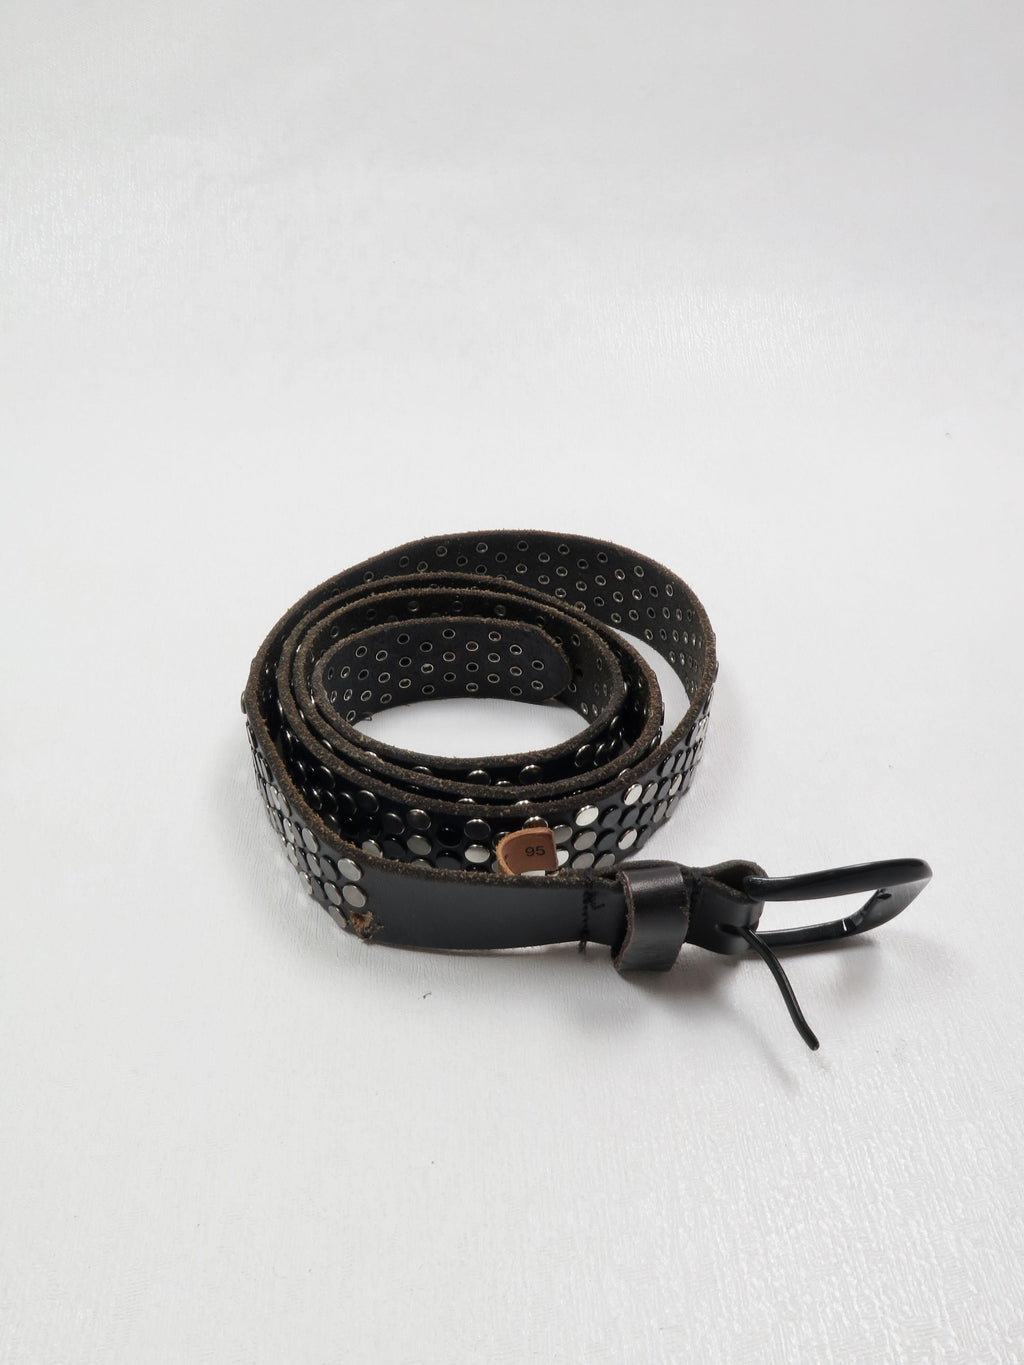 Vintage Black Leather Studded Belt M/L - The Harlequin